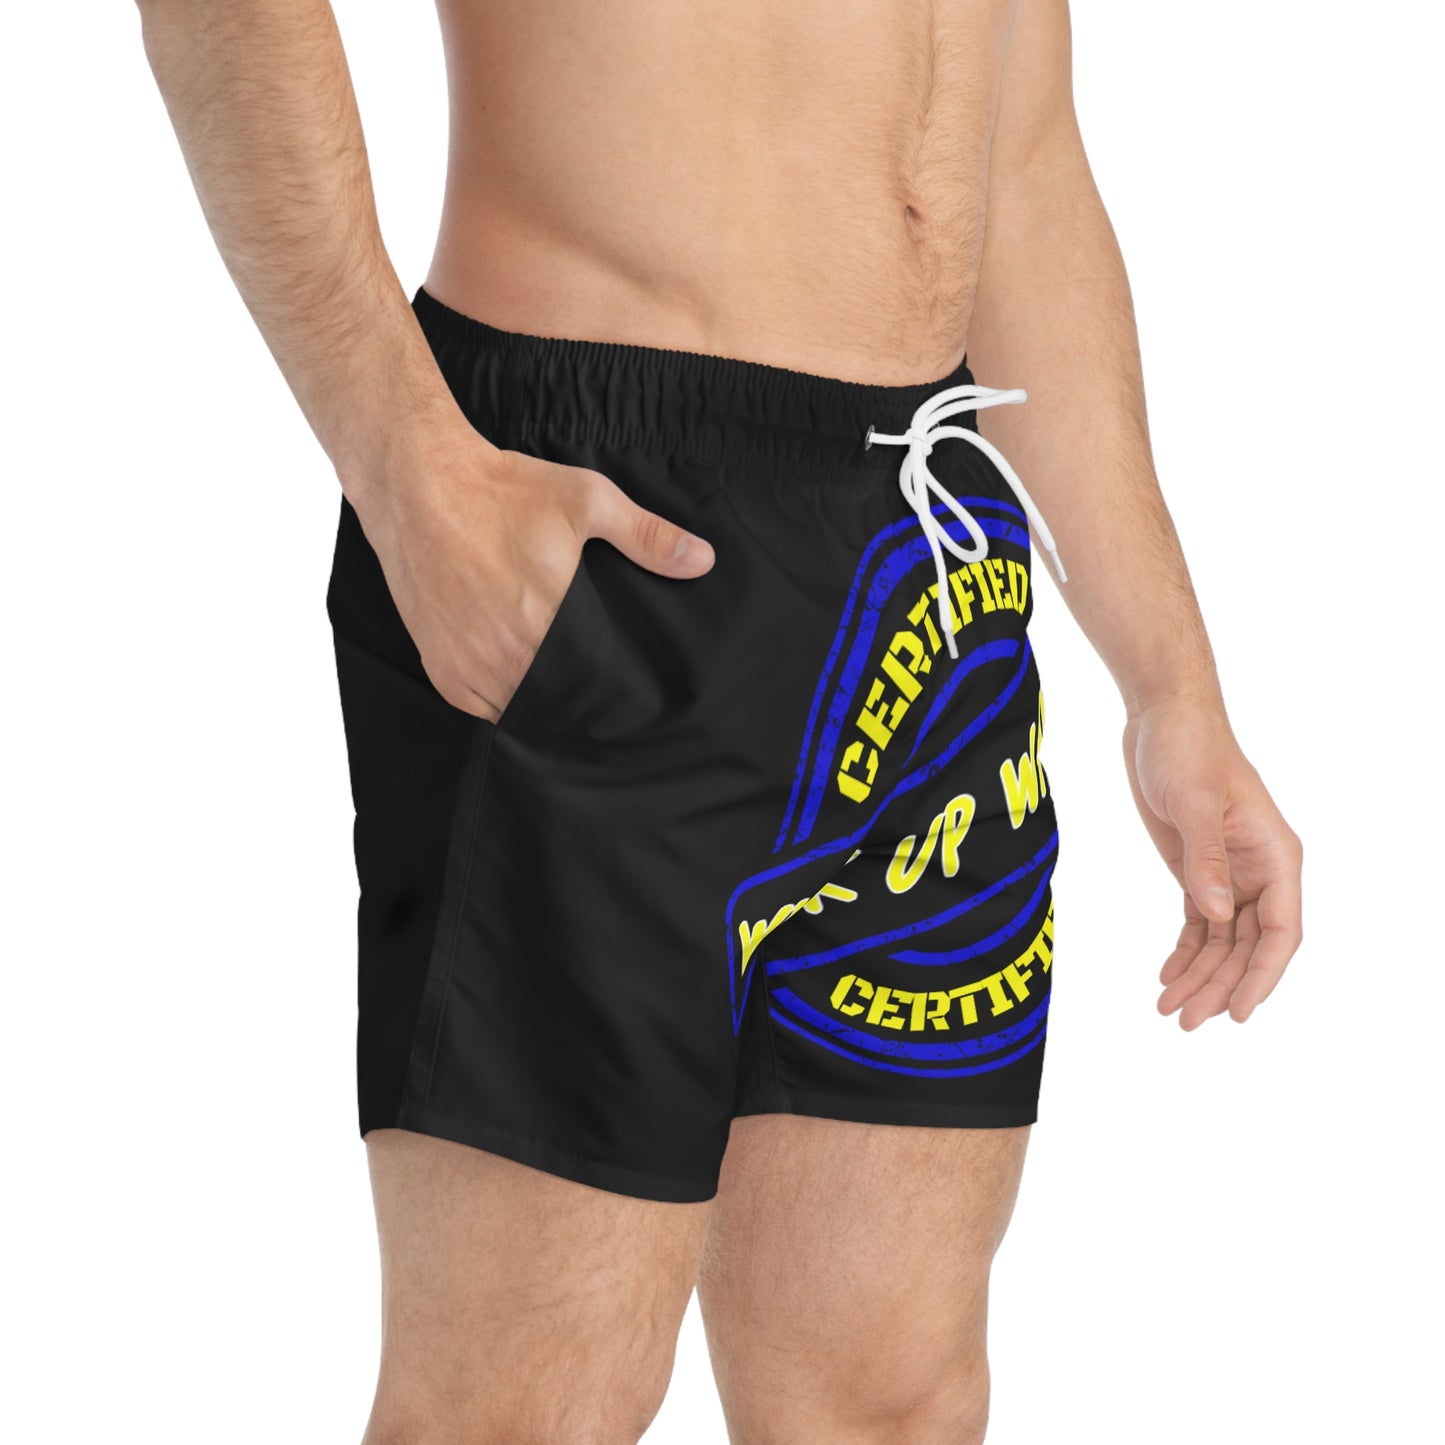 Keevo Certified  - Wuk Up Waist -  Men's Fete Shorts (black)